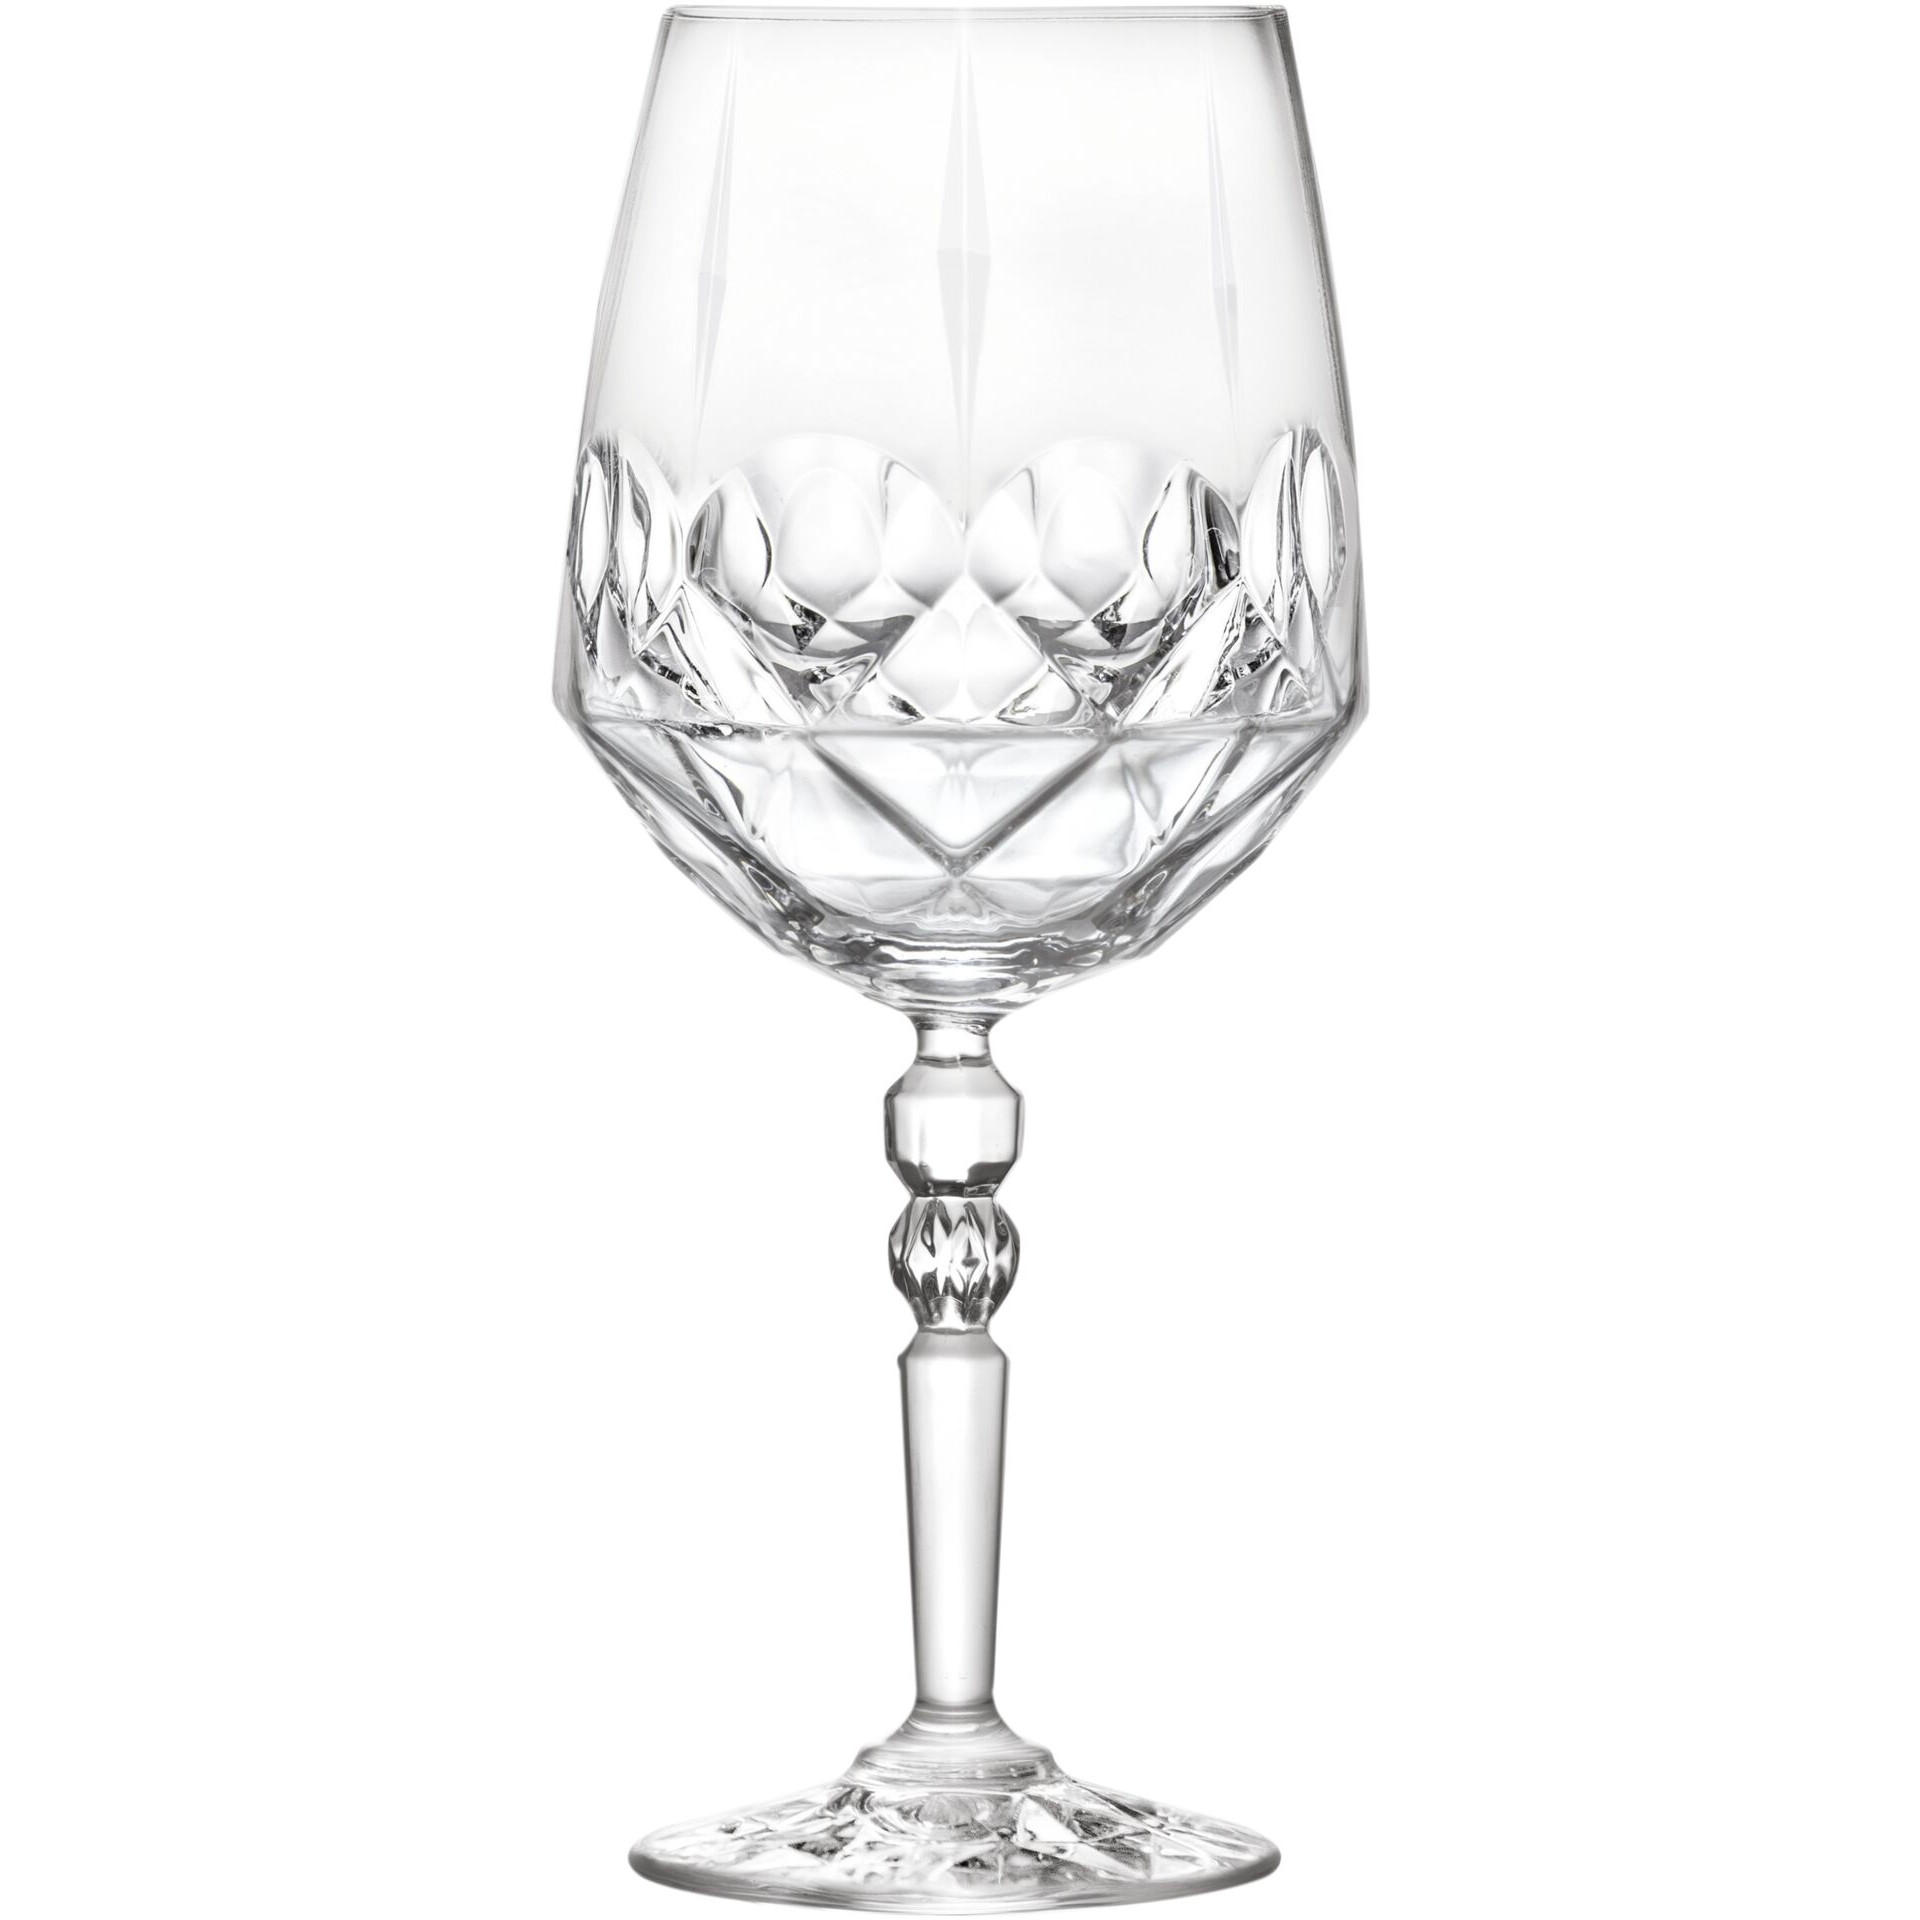 Glasserie "Alkemist" Cocktailglas 670ml